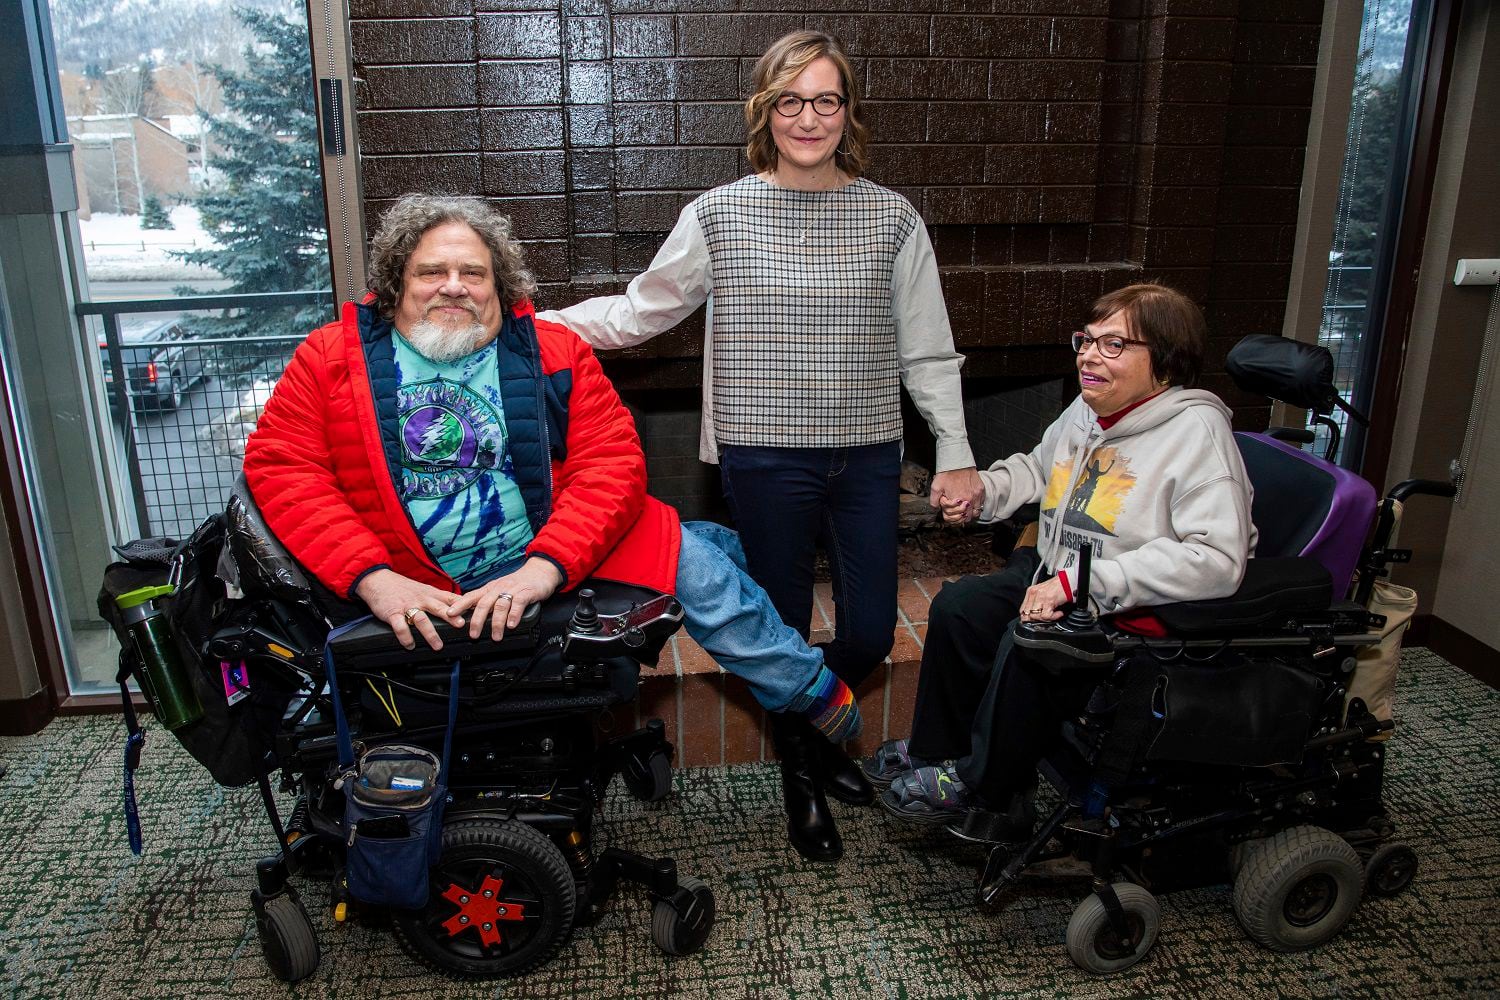 ARCHIVO - Jim LeBrecht, izquierda, y Nicole Newnham, codirectores del documental "Crip Camp", posan con la protagonista de su película, Judith Heumann, durante el Festival de Cine de Sundance el 24 de enero de 2020 en Park City, Utah. (Foto por Charles Sykes/Invision/AP, Archivo)